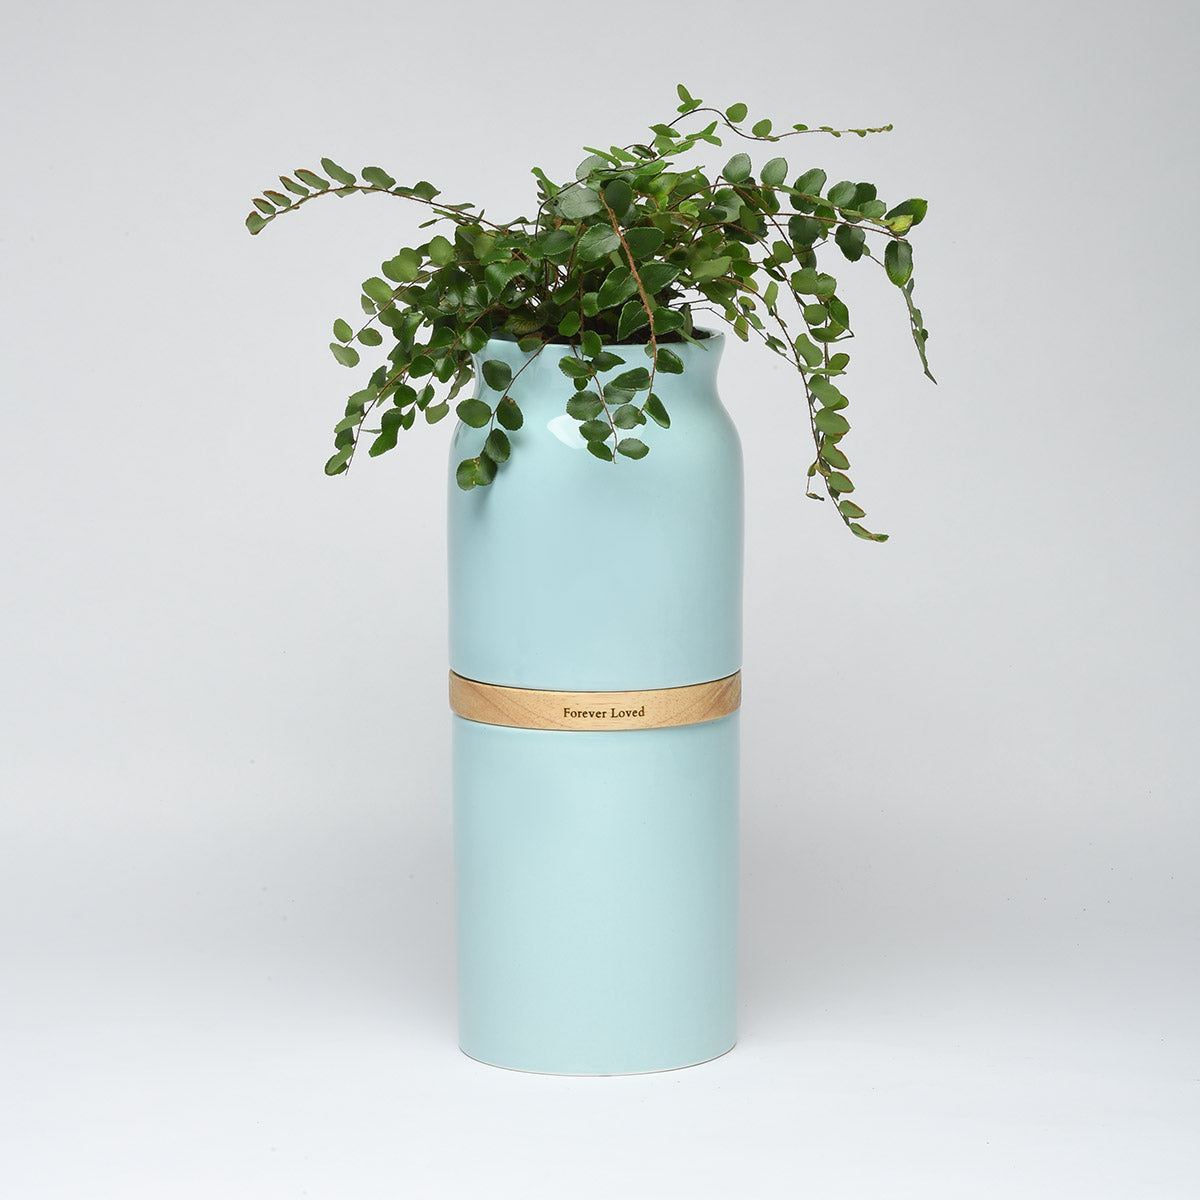 Vega Vase Urn in Blue With Light Wood